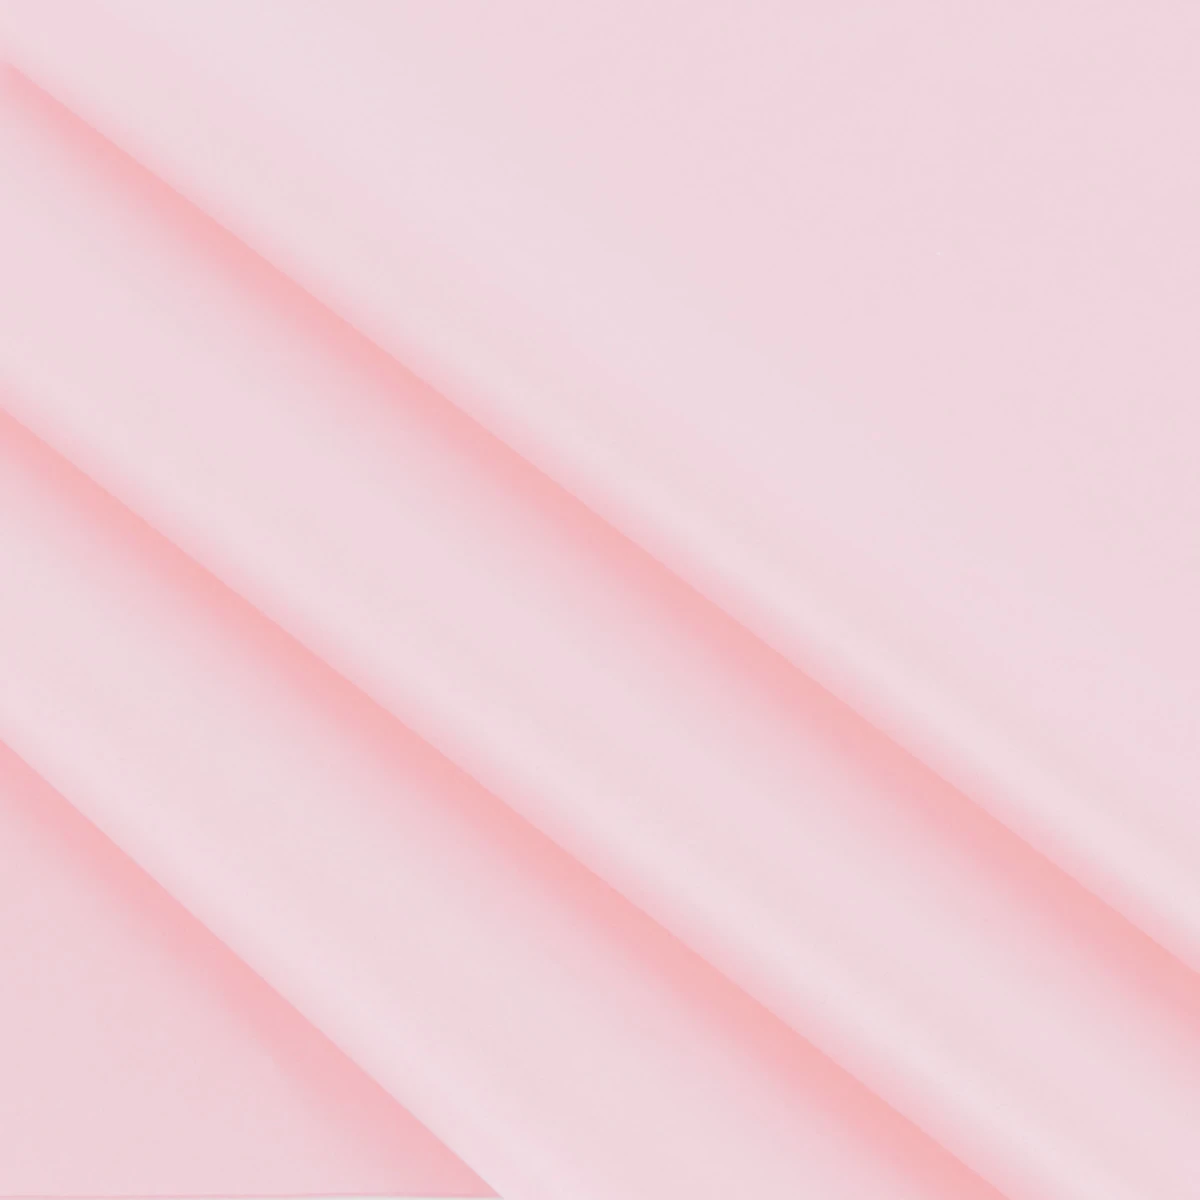 Vloeipapier roze 25 x 35 cm (480 vellen)